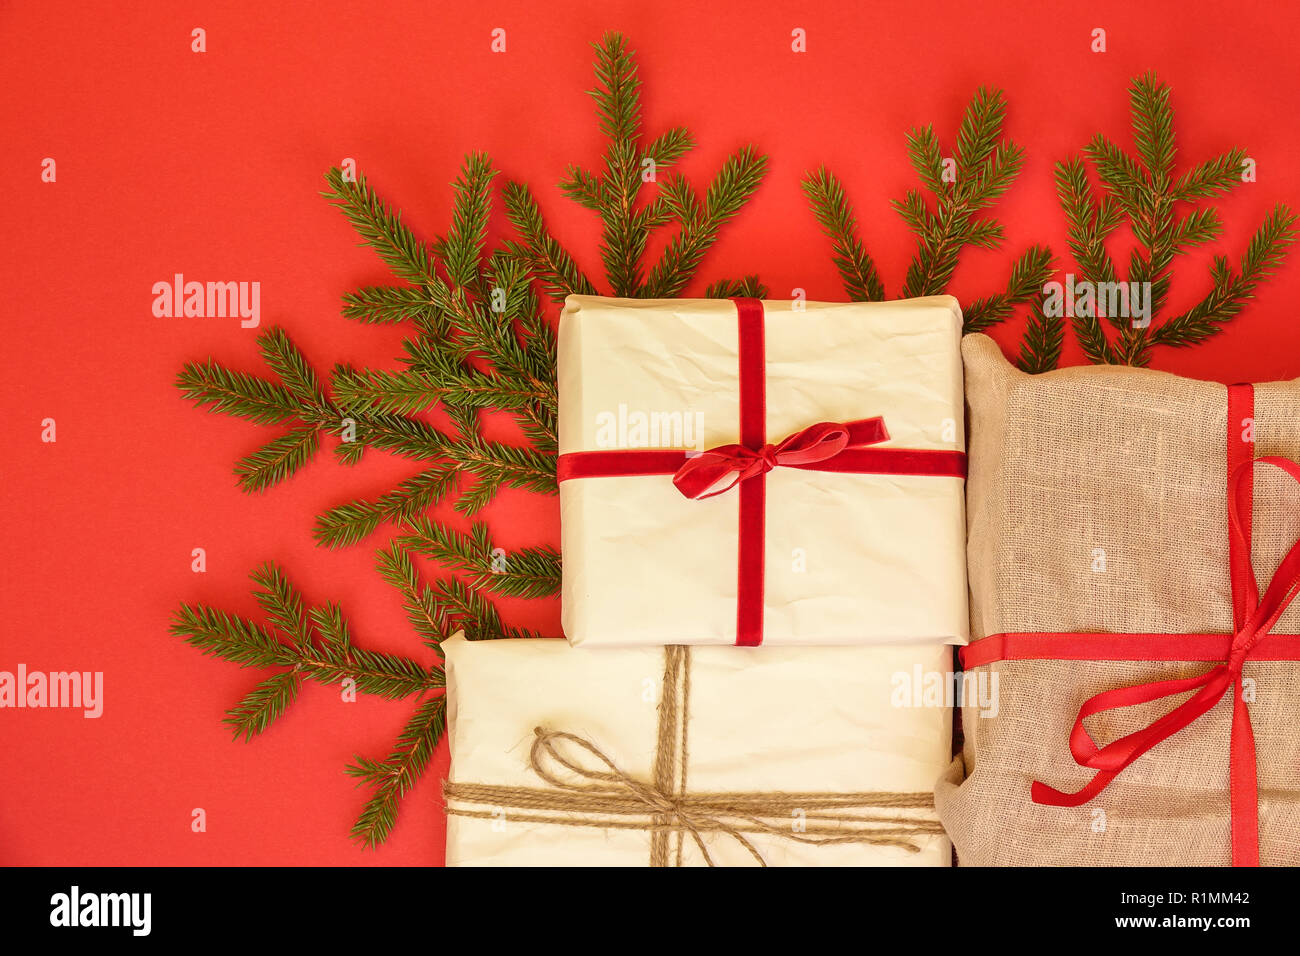 Fir / rama ramita y cajas de regalo de Navidad sobre fondo rojo. La arpillera y reutilizar/reciclar papel de embalaje. Cinta roja y cadena de lino natural. Foto de stock